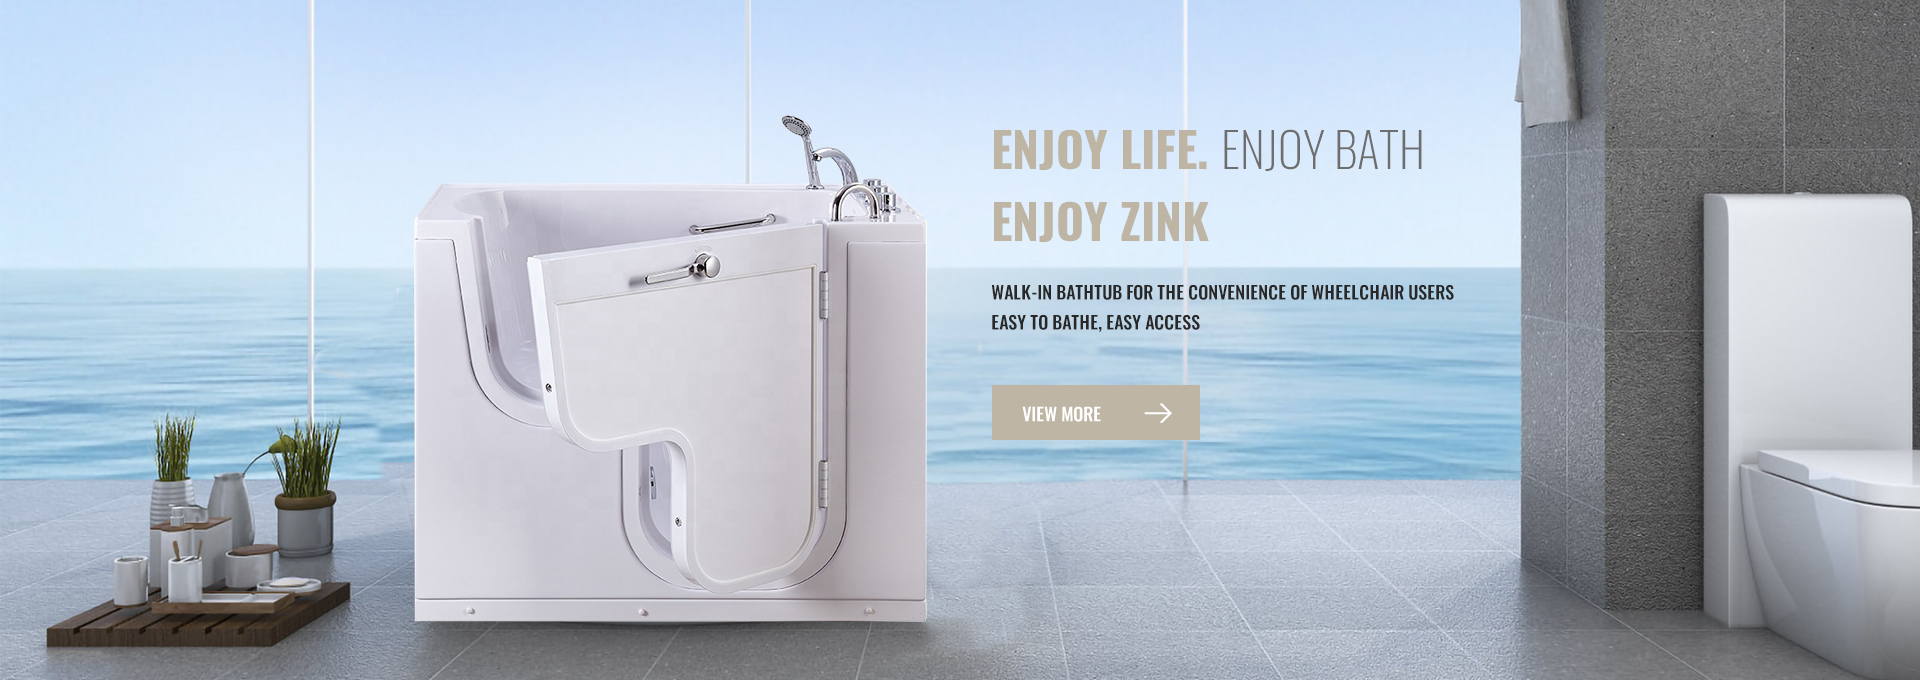 Bisa Dipercaya lan Inovatif: Foshan Zink Sanitary Ware Co., Ltd. - Mitra Terpercaya Sampeyan kanggo Bathtub Walk-In Kualitas lan Liyane